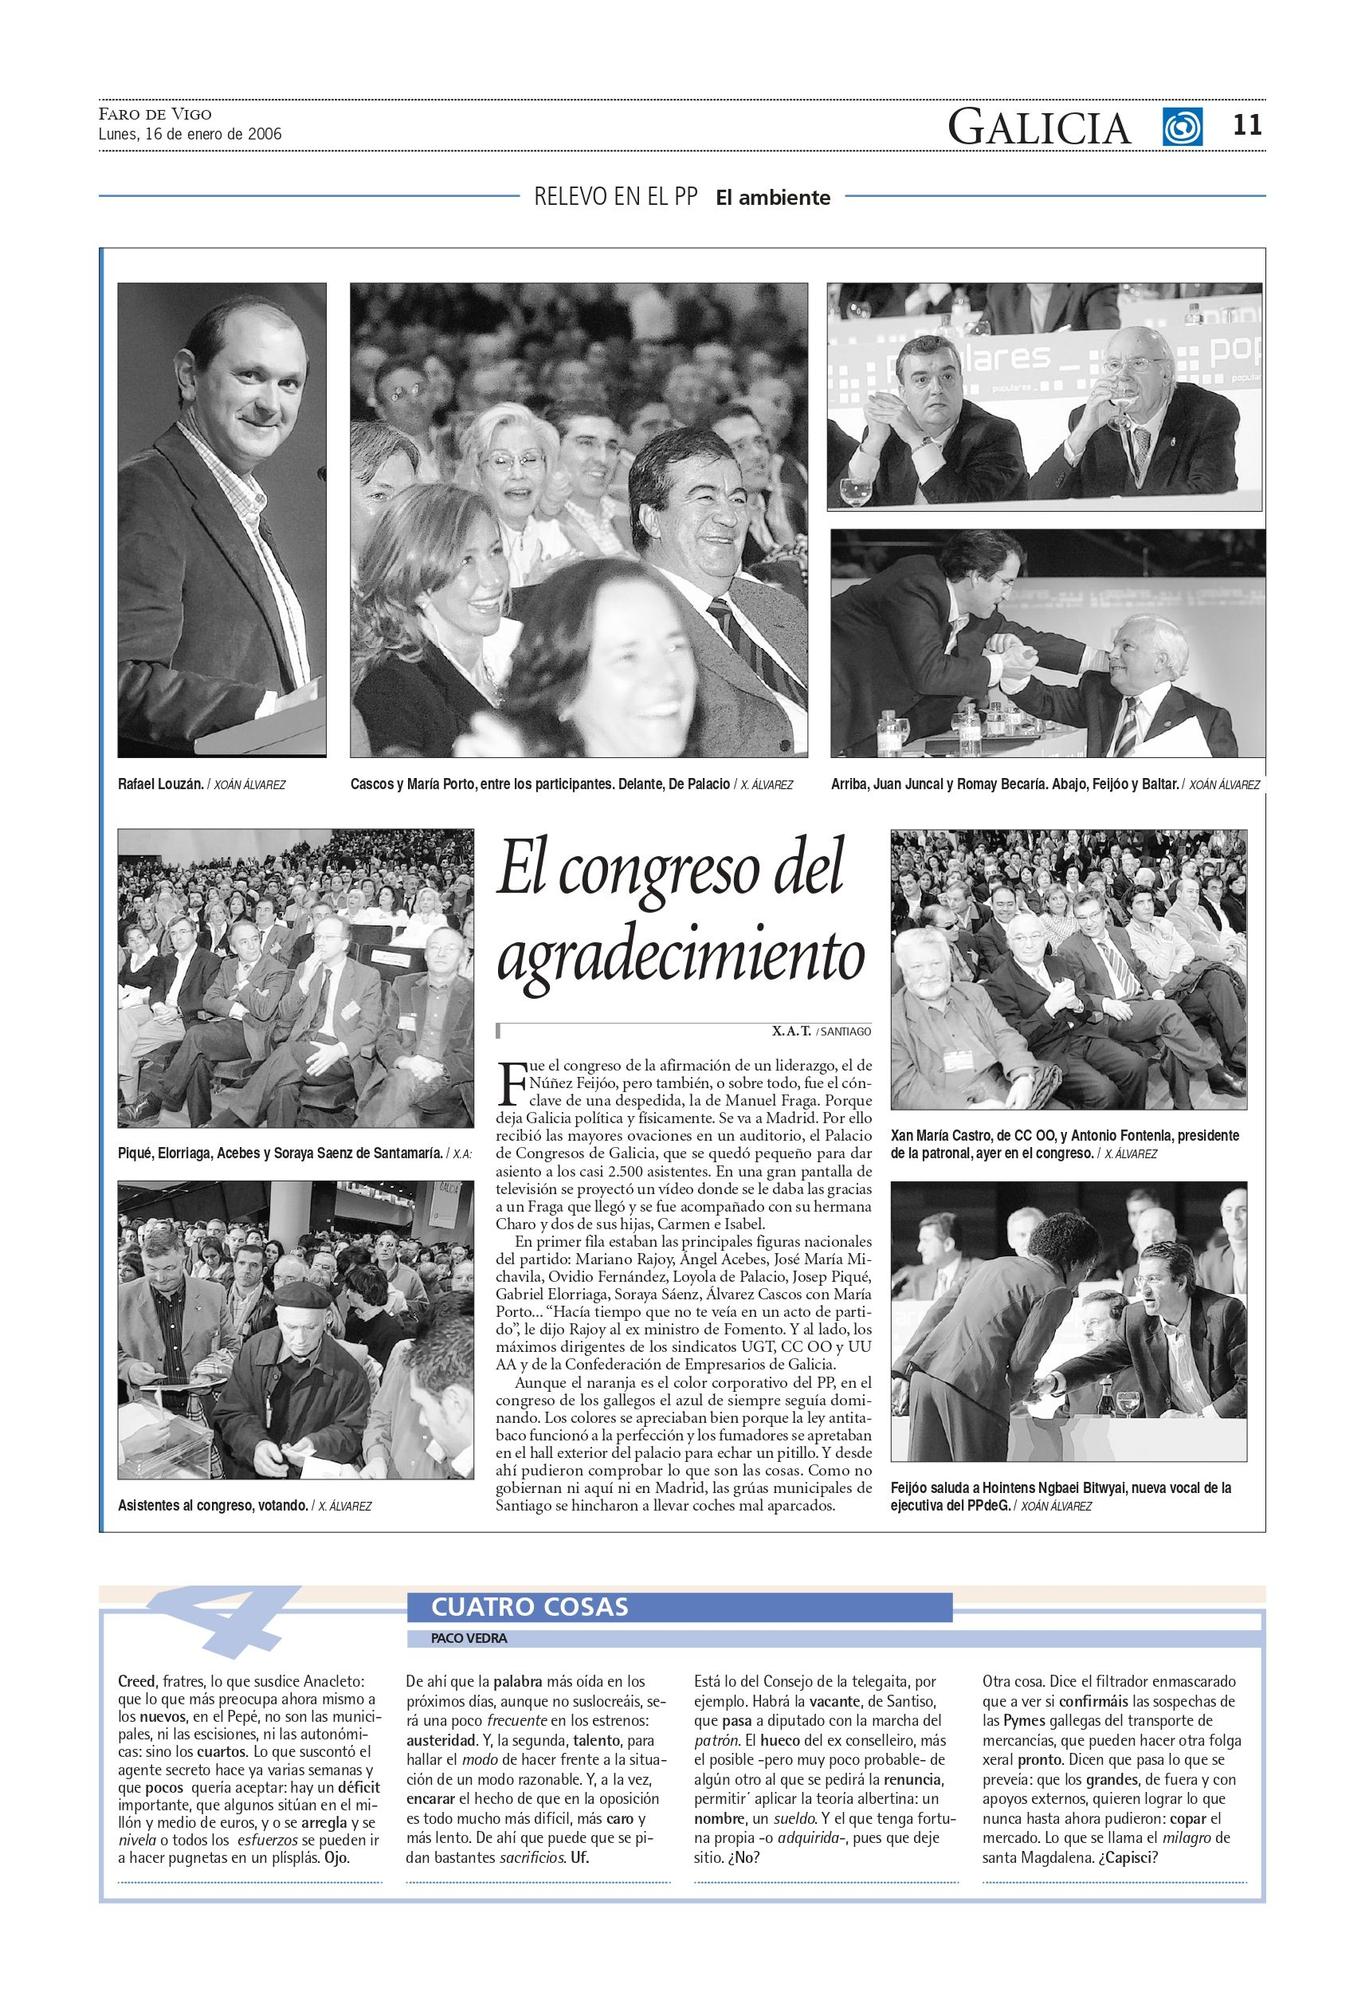 Crónica de ambiente sobre el día en el que Alberto Núñez Feijóo fue elegido nuevo presidente del PPdeG, hace 16 años.